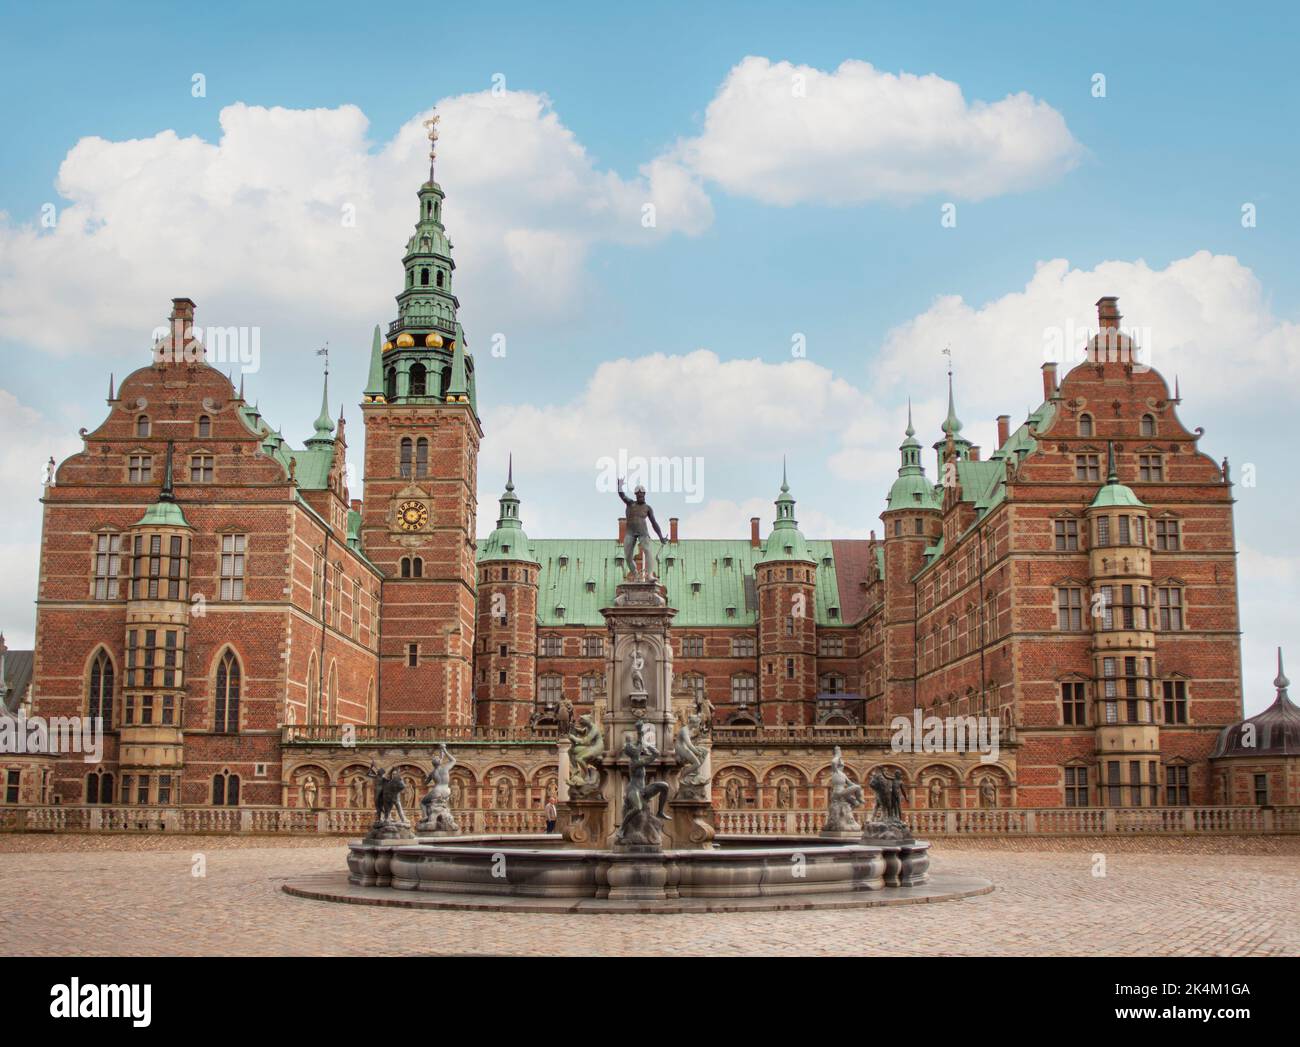 Château de Frederiksborg au Danemark avec fontaine Neptune en face. Palais du début du 17th siècle. Image du ciel bleu. Copenhague, Danemark - 29 septembre, 20 Banque D'Images